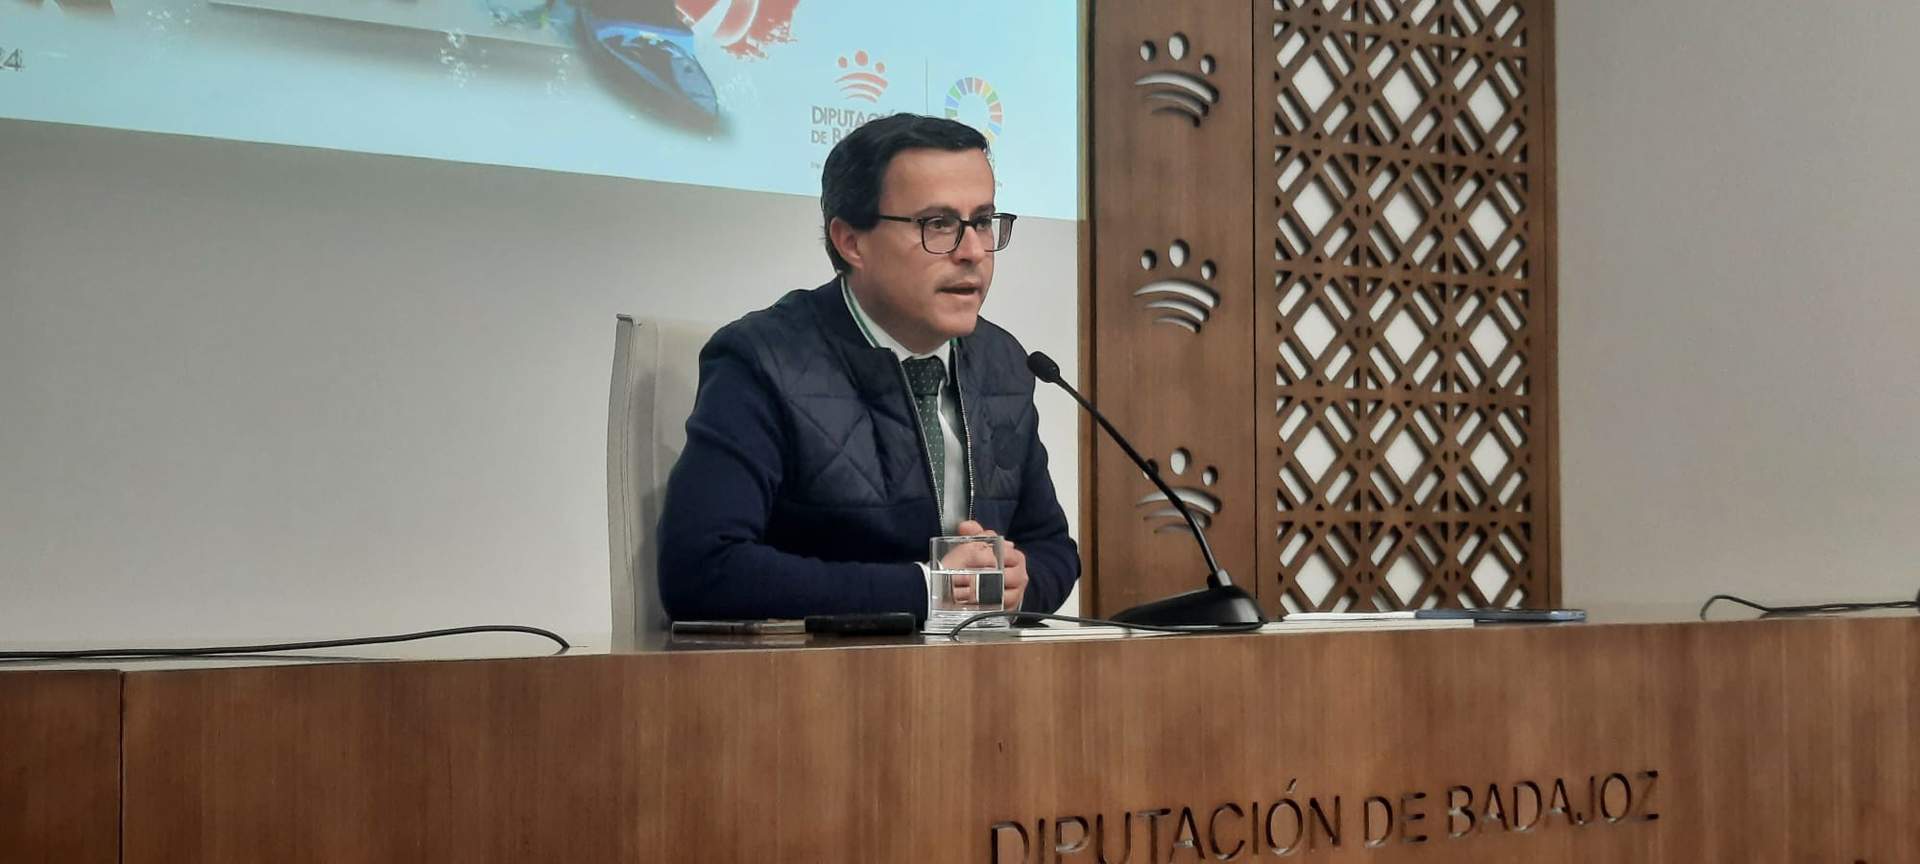 PSOE defiende continuidad de Almaraz (Cáceres) mientras no haya un proyecto que absorba su empleo  en la misma calidad 